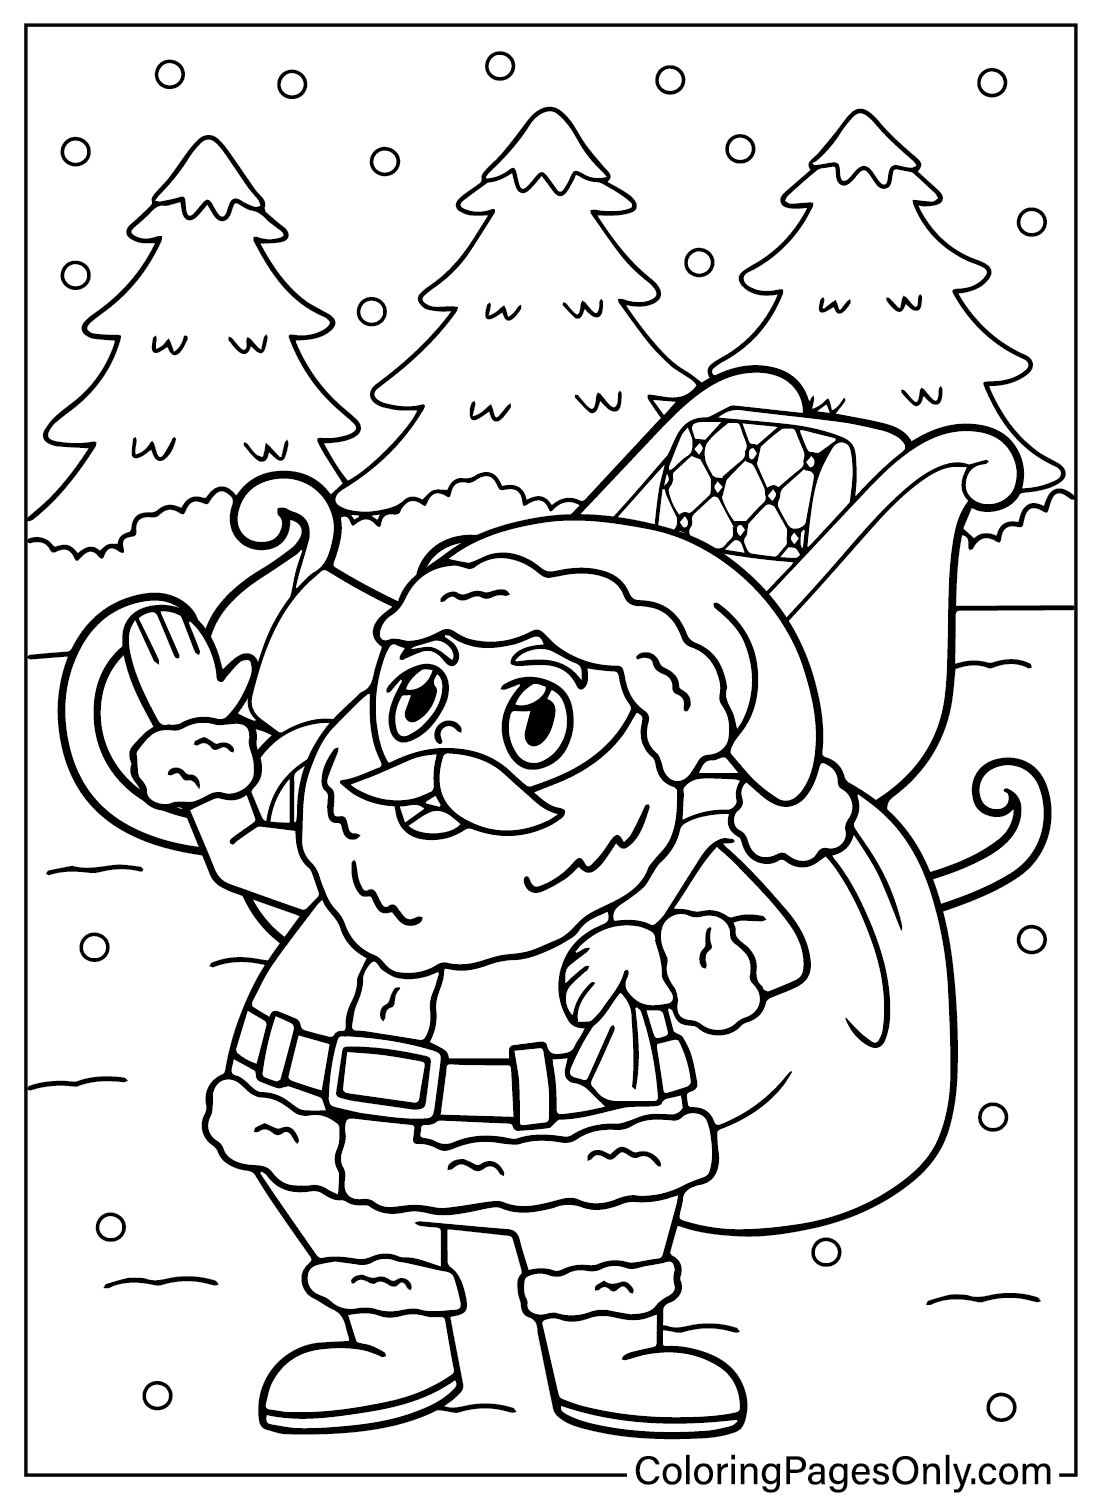 Coloring Page Santa Claus